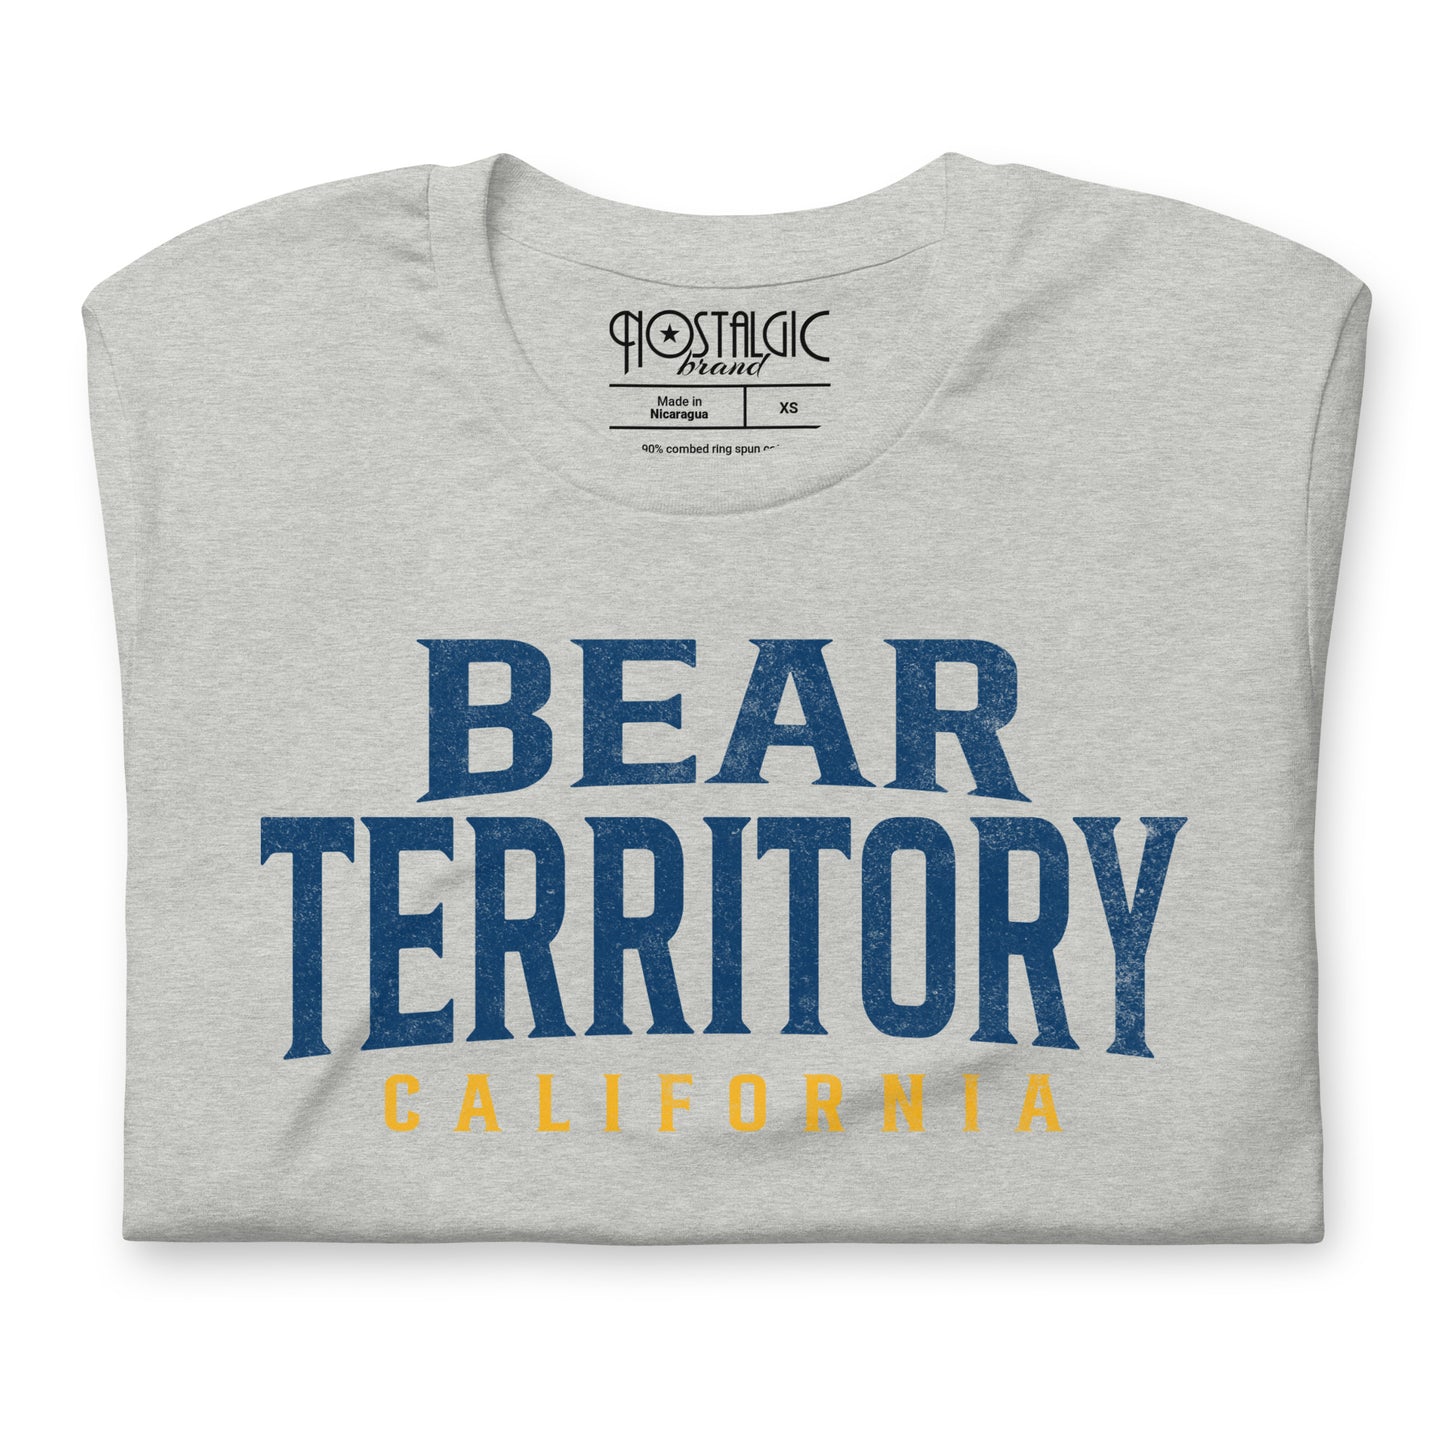 Bear Territory